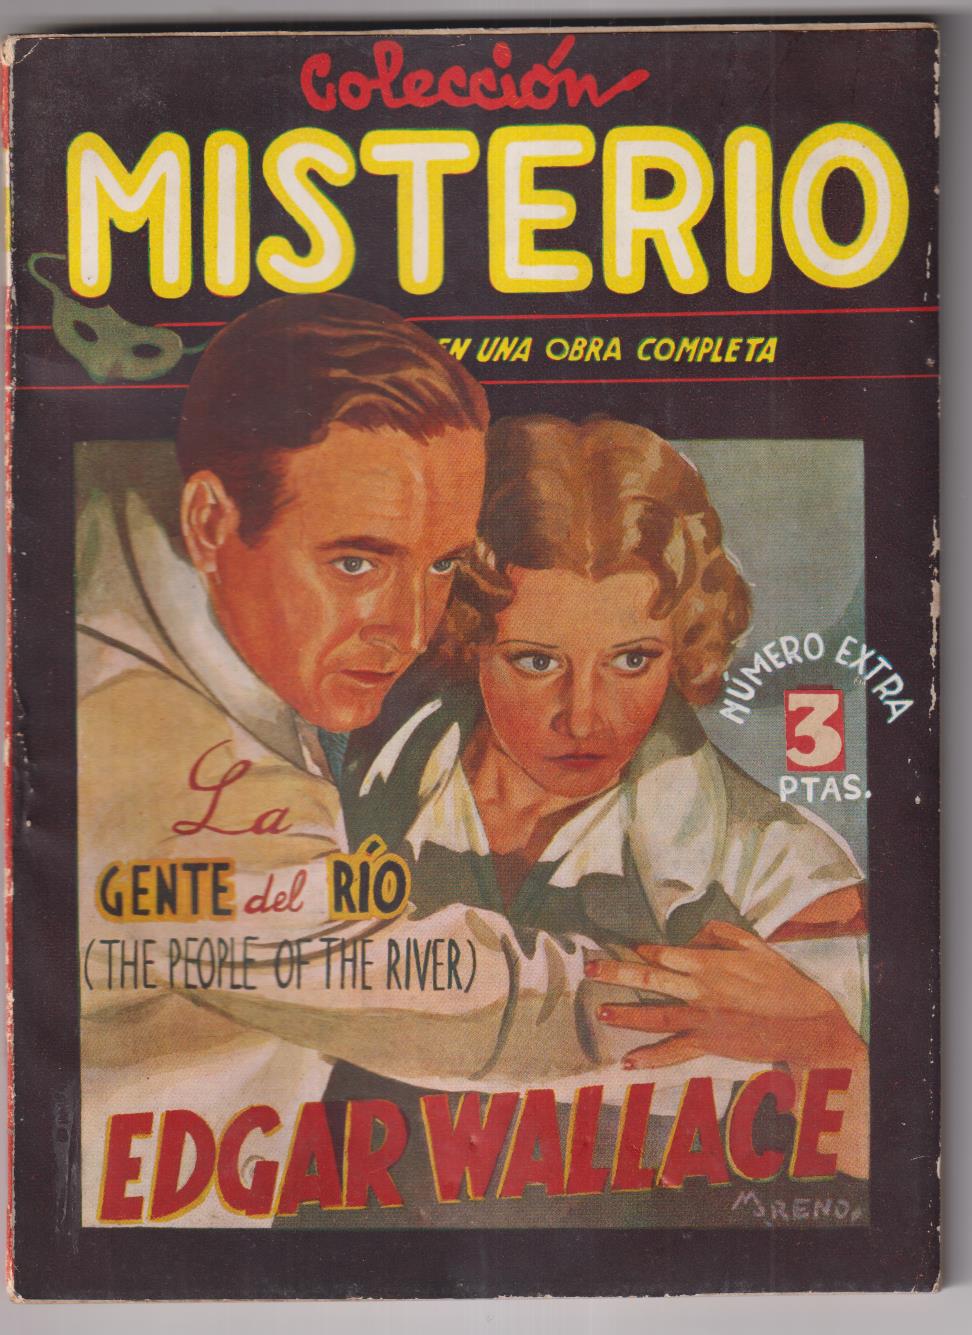 Edgar Wallace. La gente del Río. Colección Misterio. 1ª Edición Cliper 1945